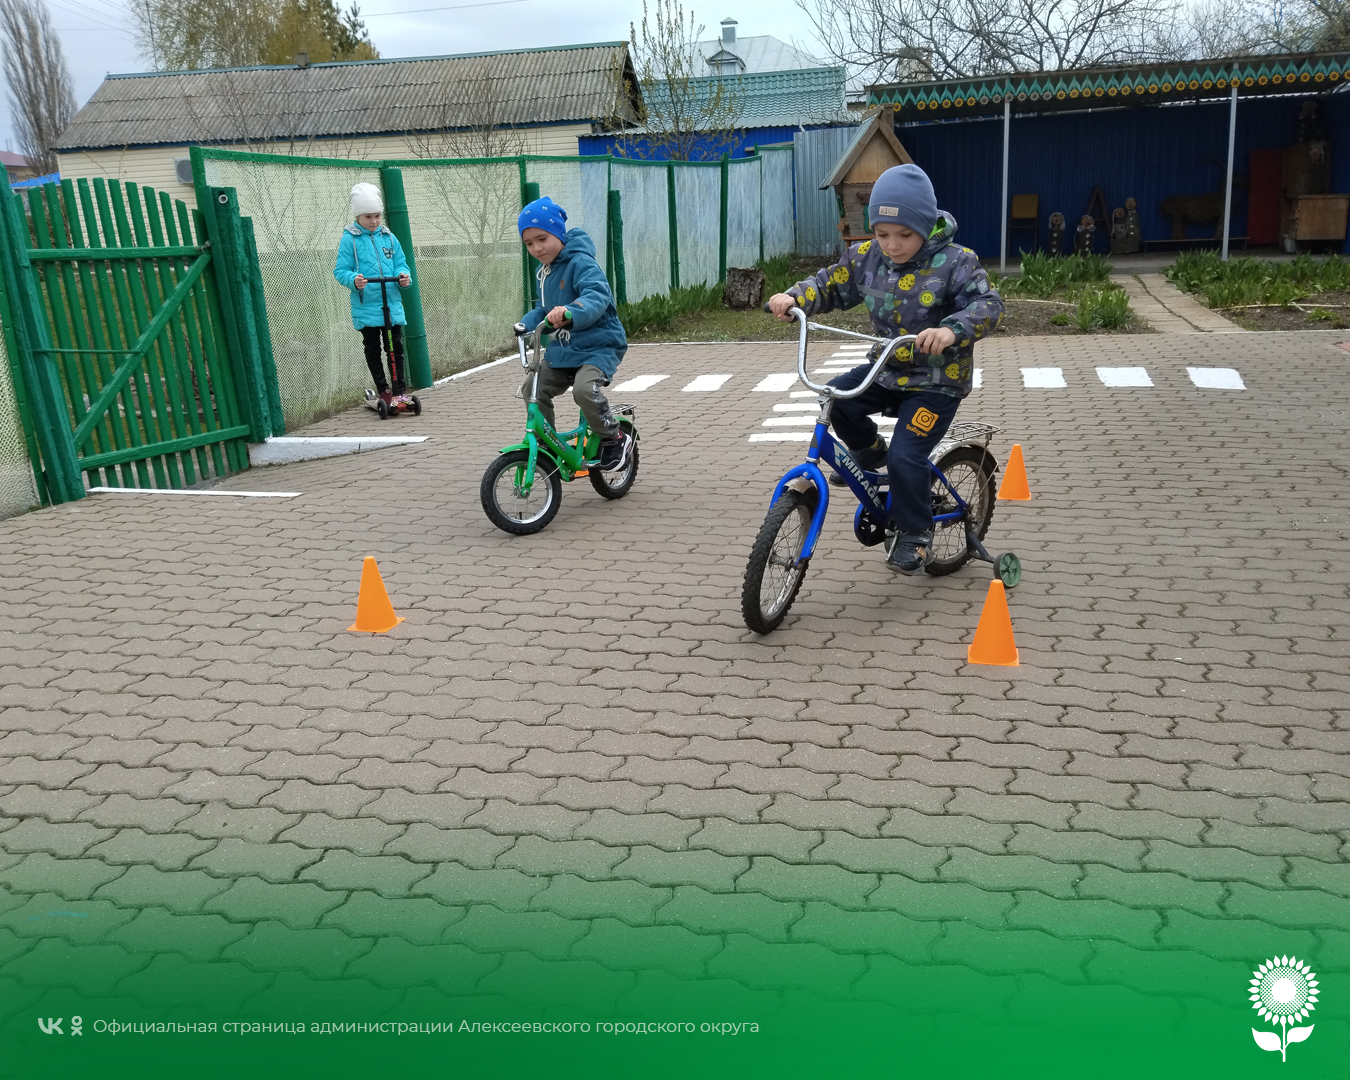 В детских садах Алексеевского городского округа прошёл спортивный праздник «Мой друг - велосипед!»